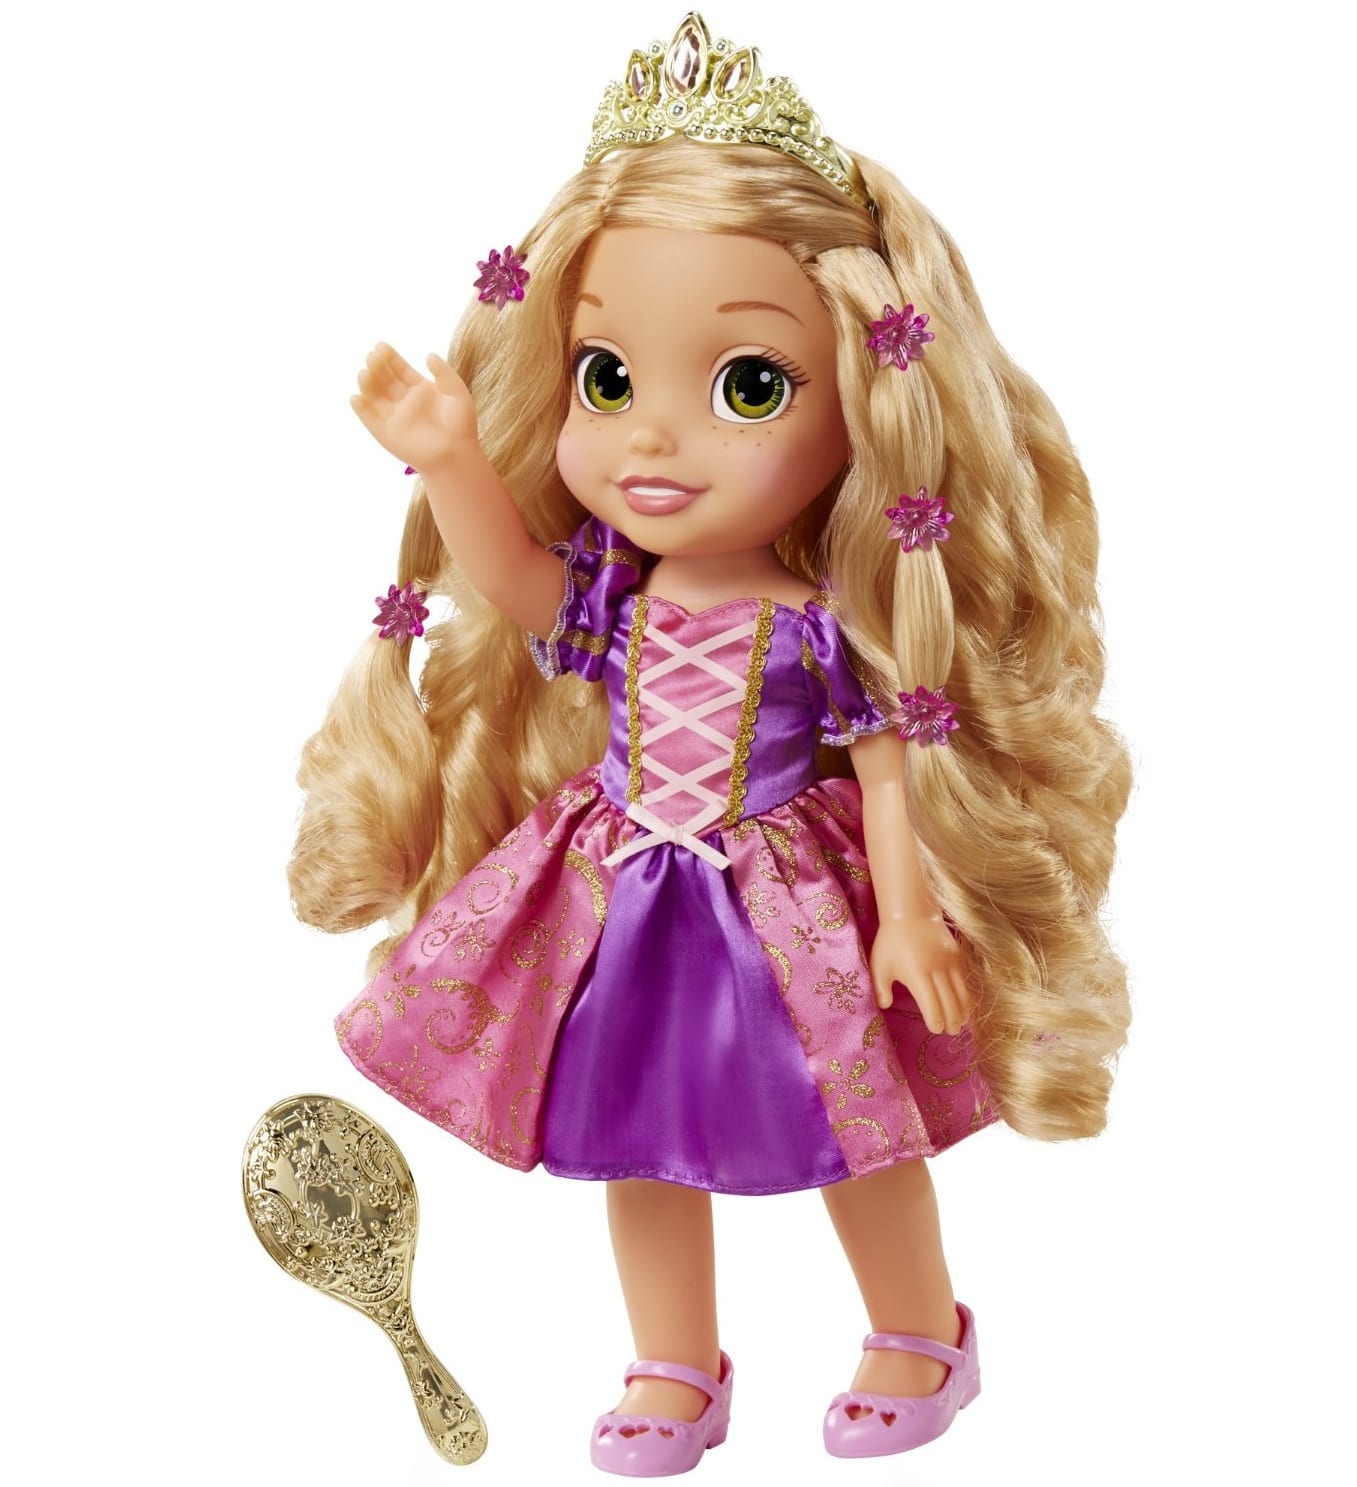 Рапунцель большая. Кукла Disney принцесса-Рапунцель со светящимися волосами. Кукла принцессы Дисней Рапунцель со светящимися волосами. Кукла Рапунцель с длинными волосами Disney Princess. Disney Jakks Pacific принцесса Рапунцель.